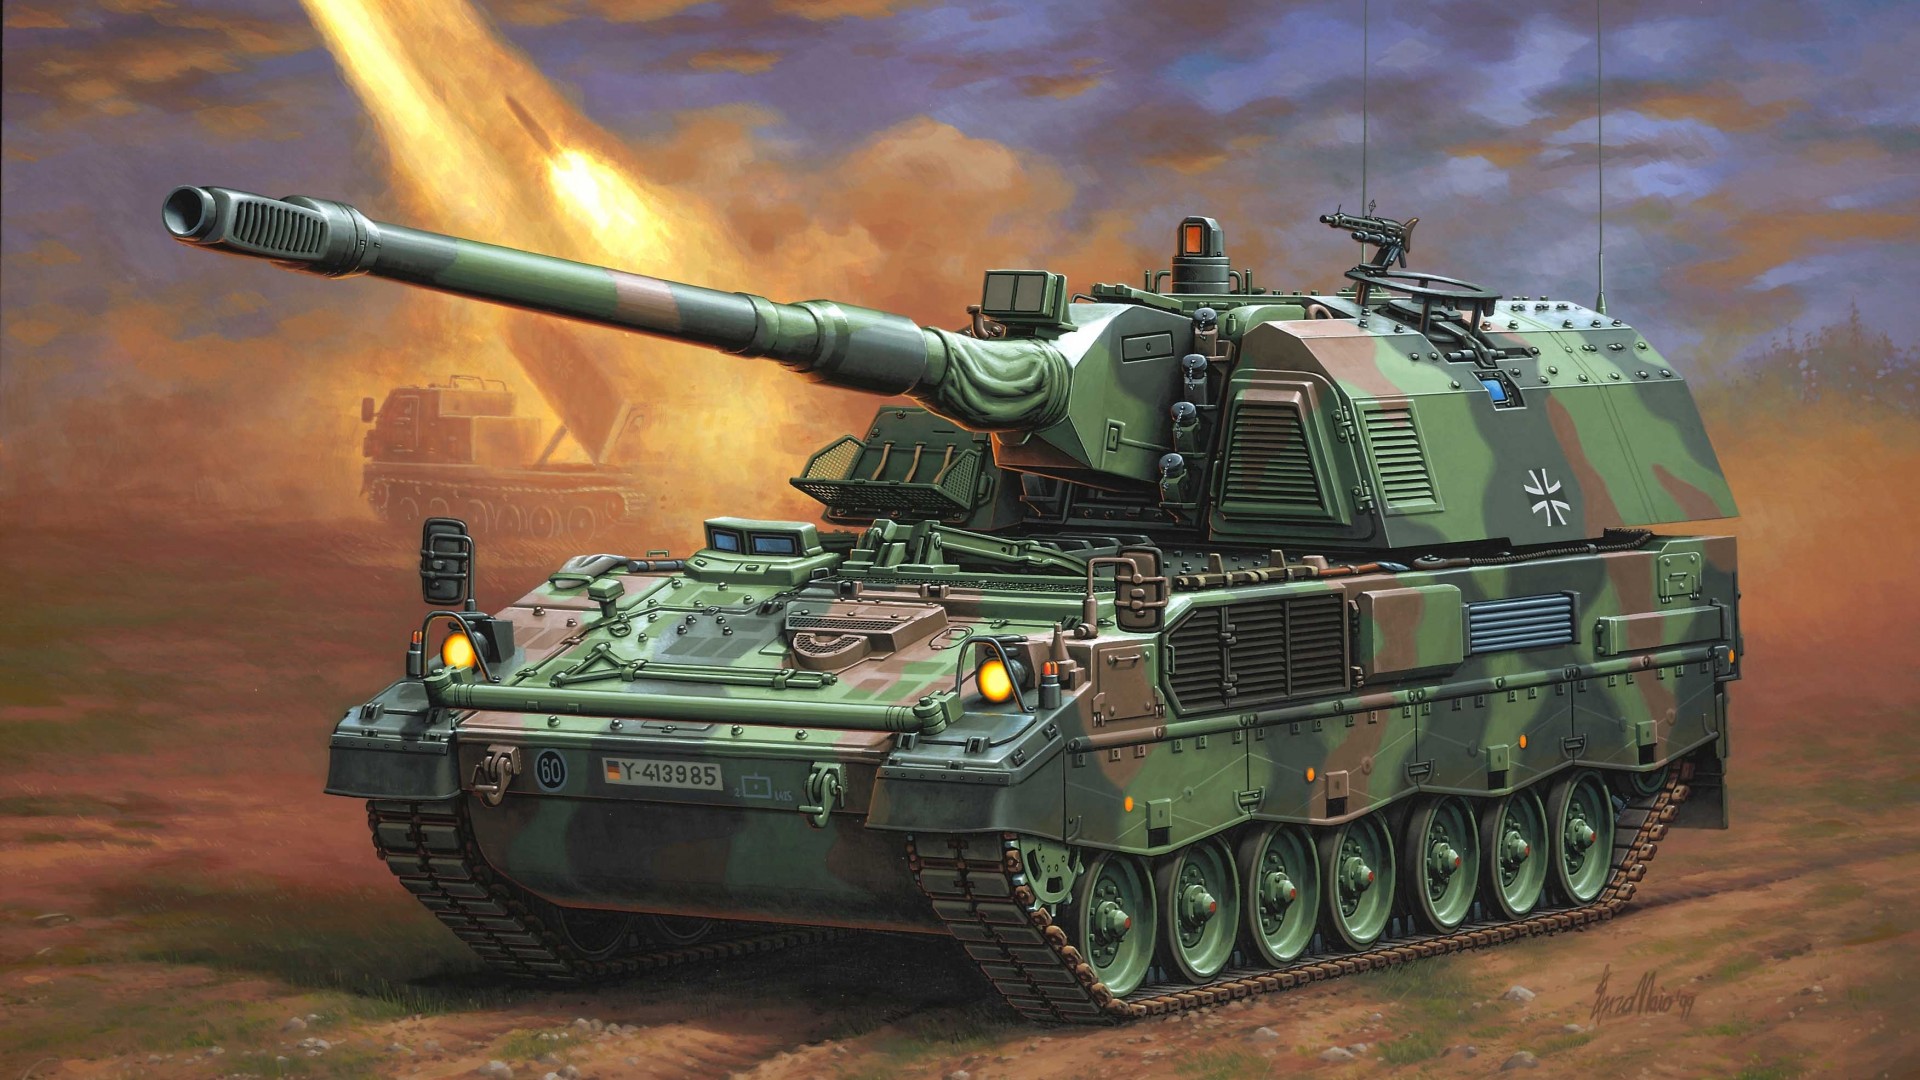 САУ, гаубица, артиллерия, рисунок, PzH 2000, howitzer, Panzerhaubitze, artillery, Bundeswehr, firing, art, painting (horizontal)